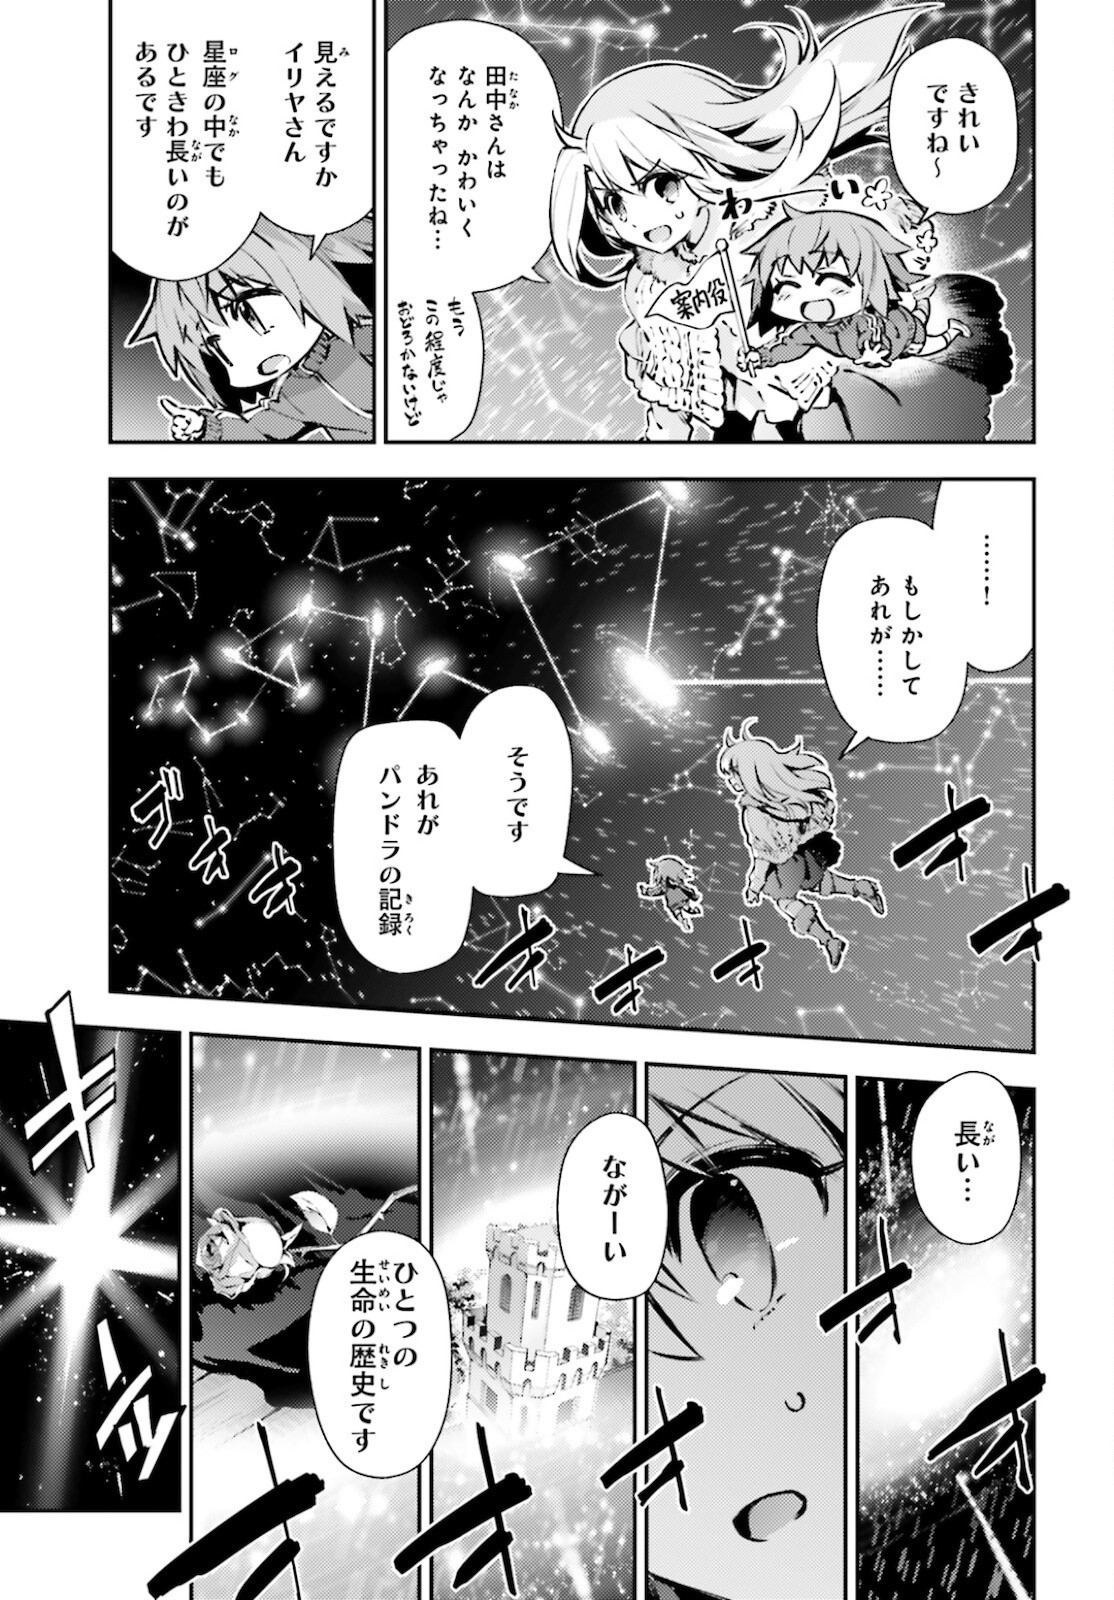 Fate Kaleid Liner Prisma Illya Drei Chapter 63 Page 3 Raw Sen Manga